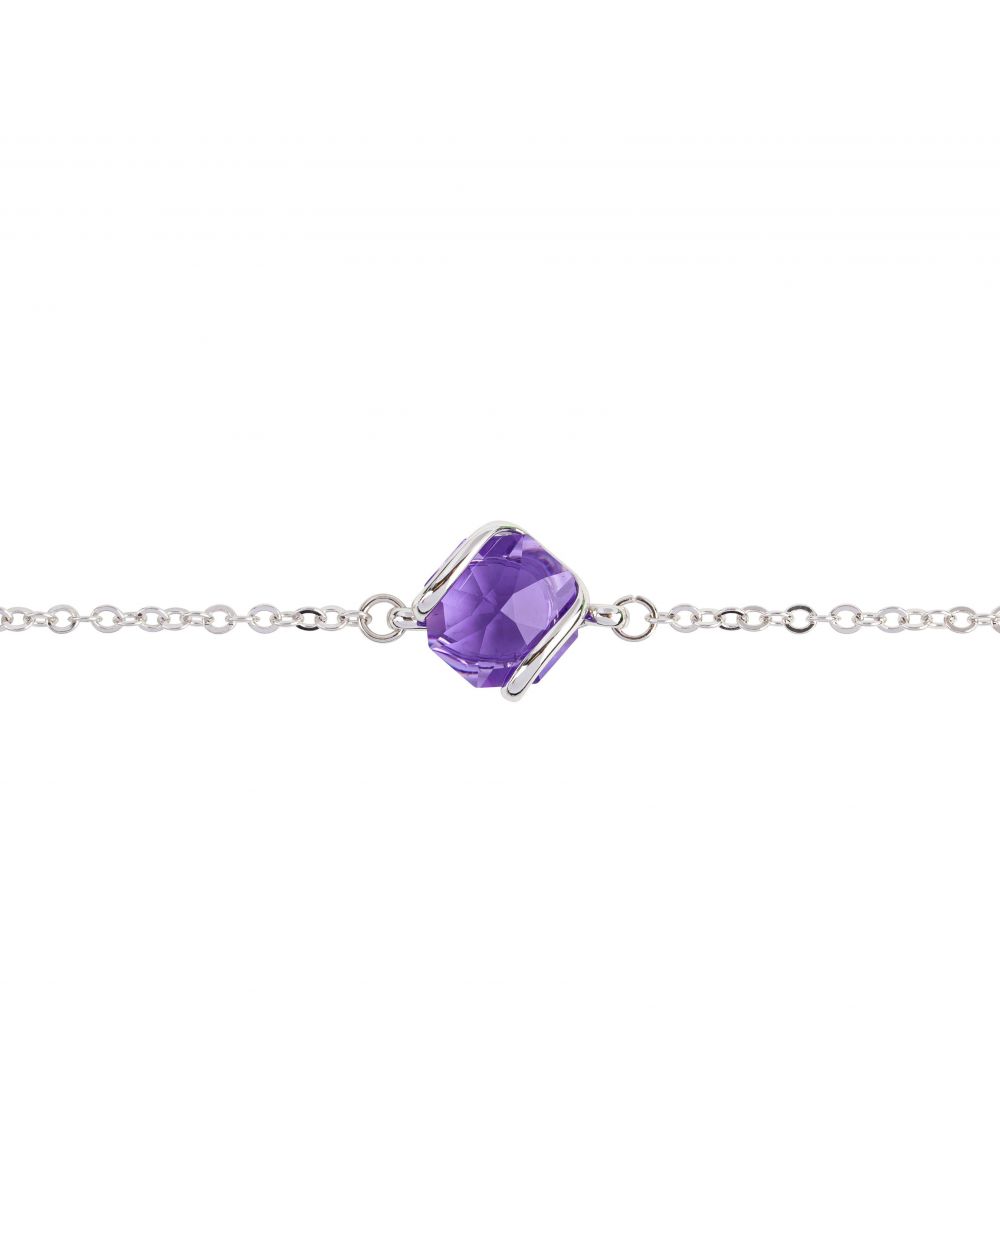 Andrea Marazzini bijoux - Bracelet cristal Swarovski Octagon Violet 